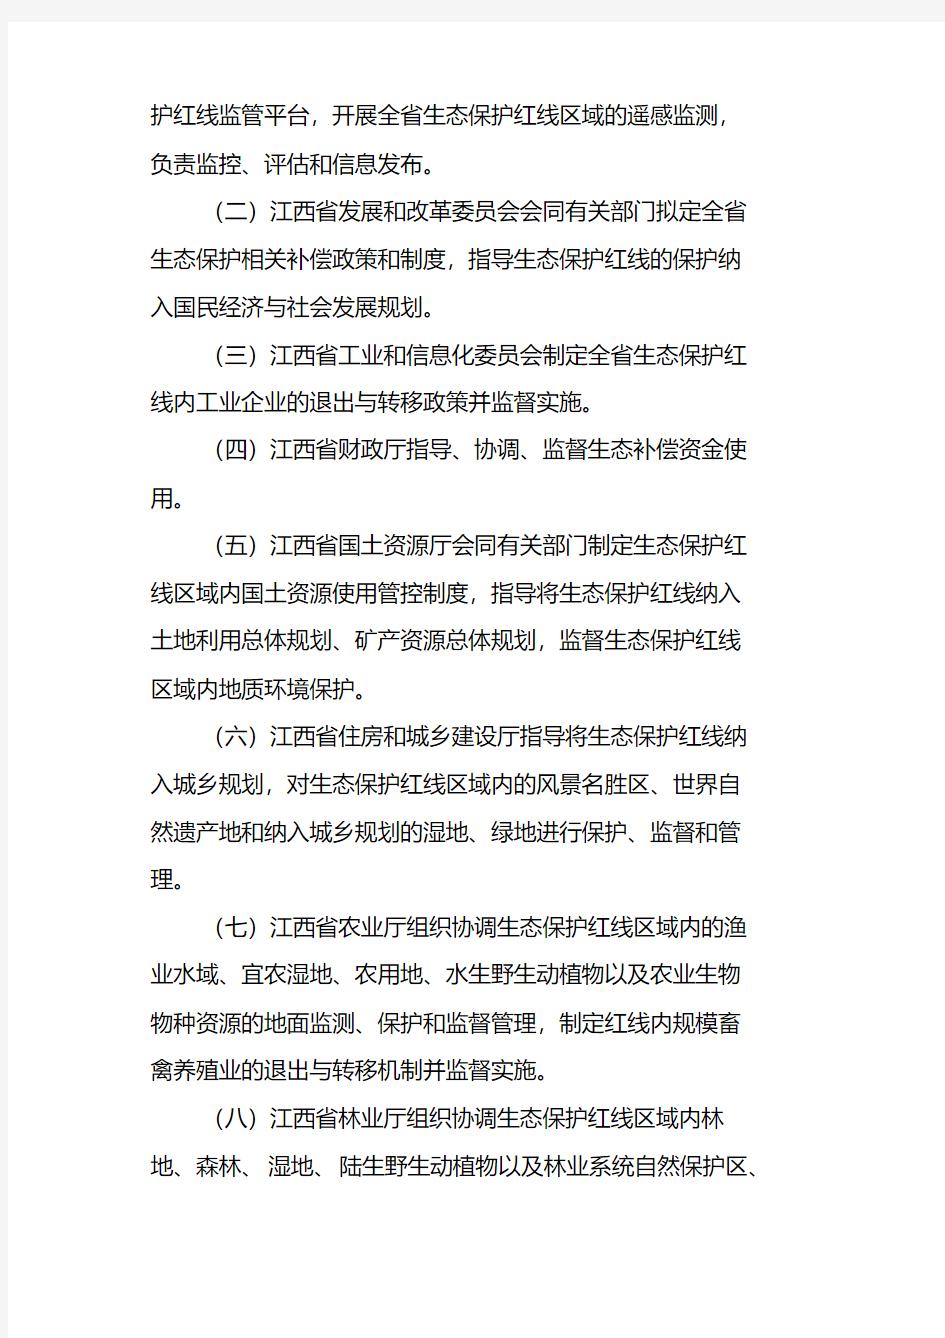 江西省生态保护红线管理办法(试行)(第二次征求意见稿)